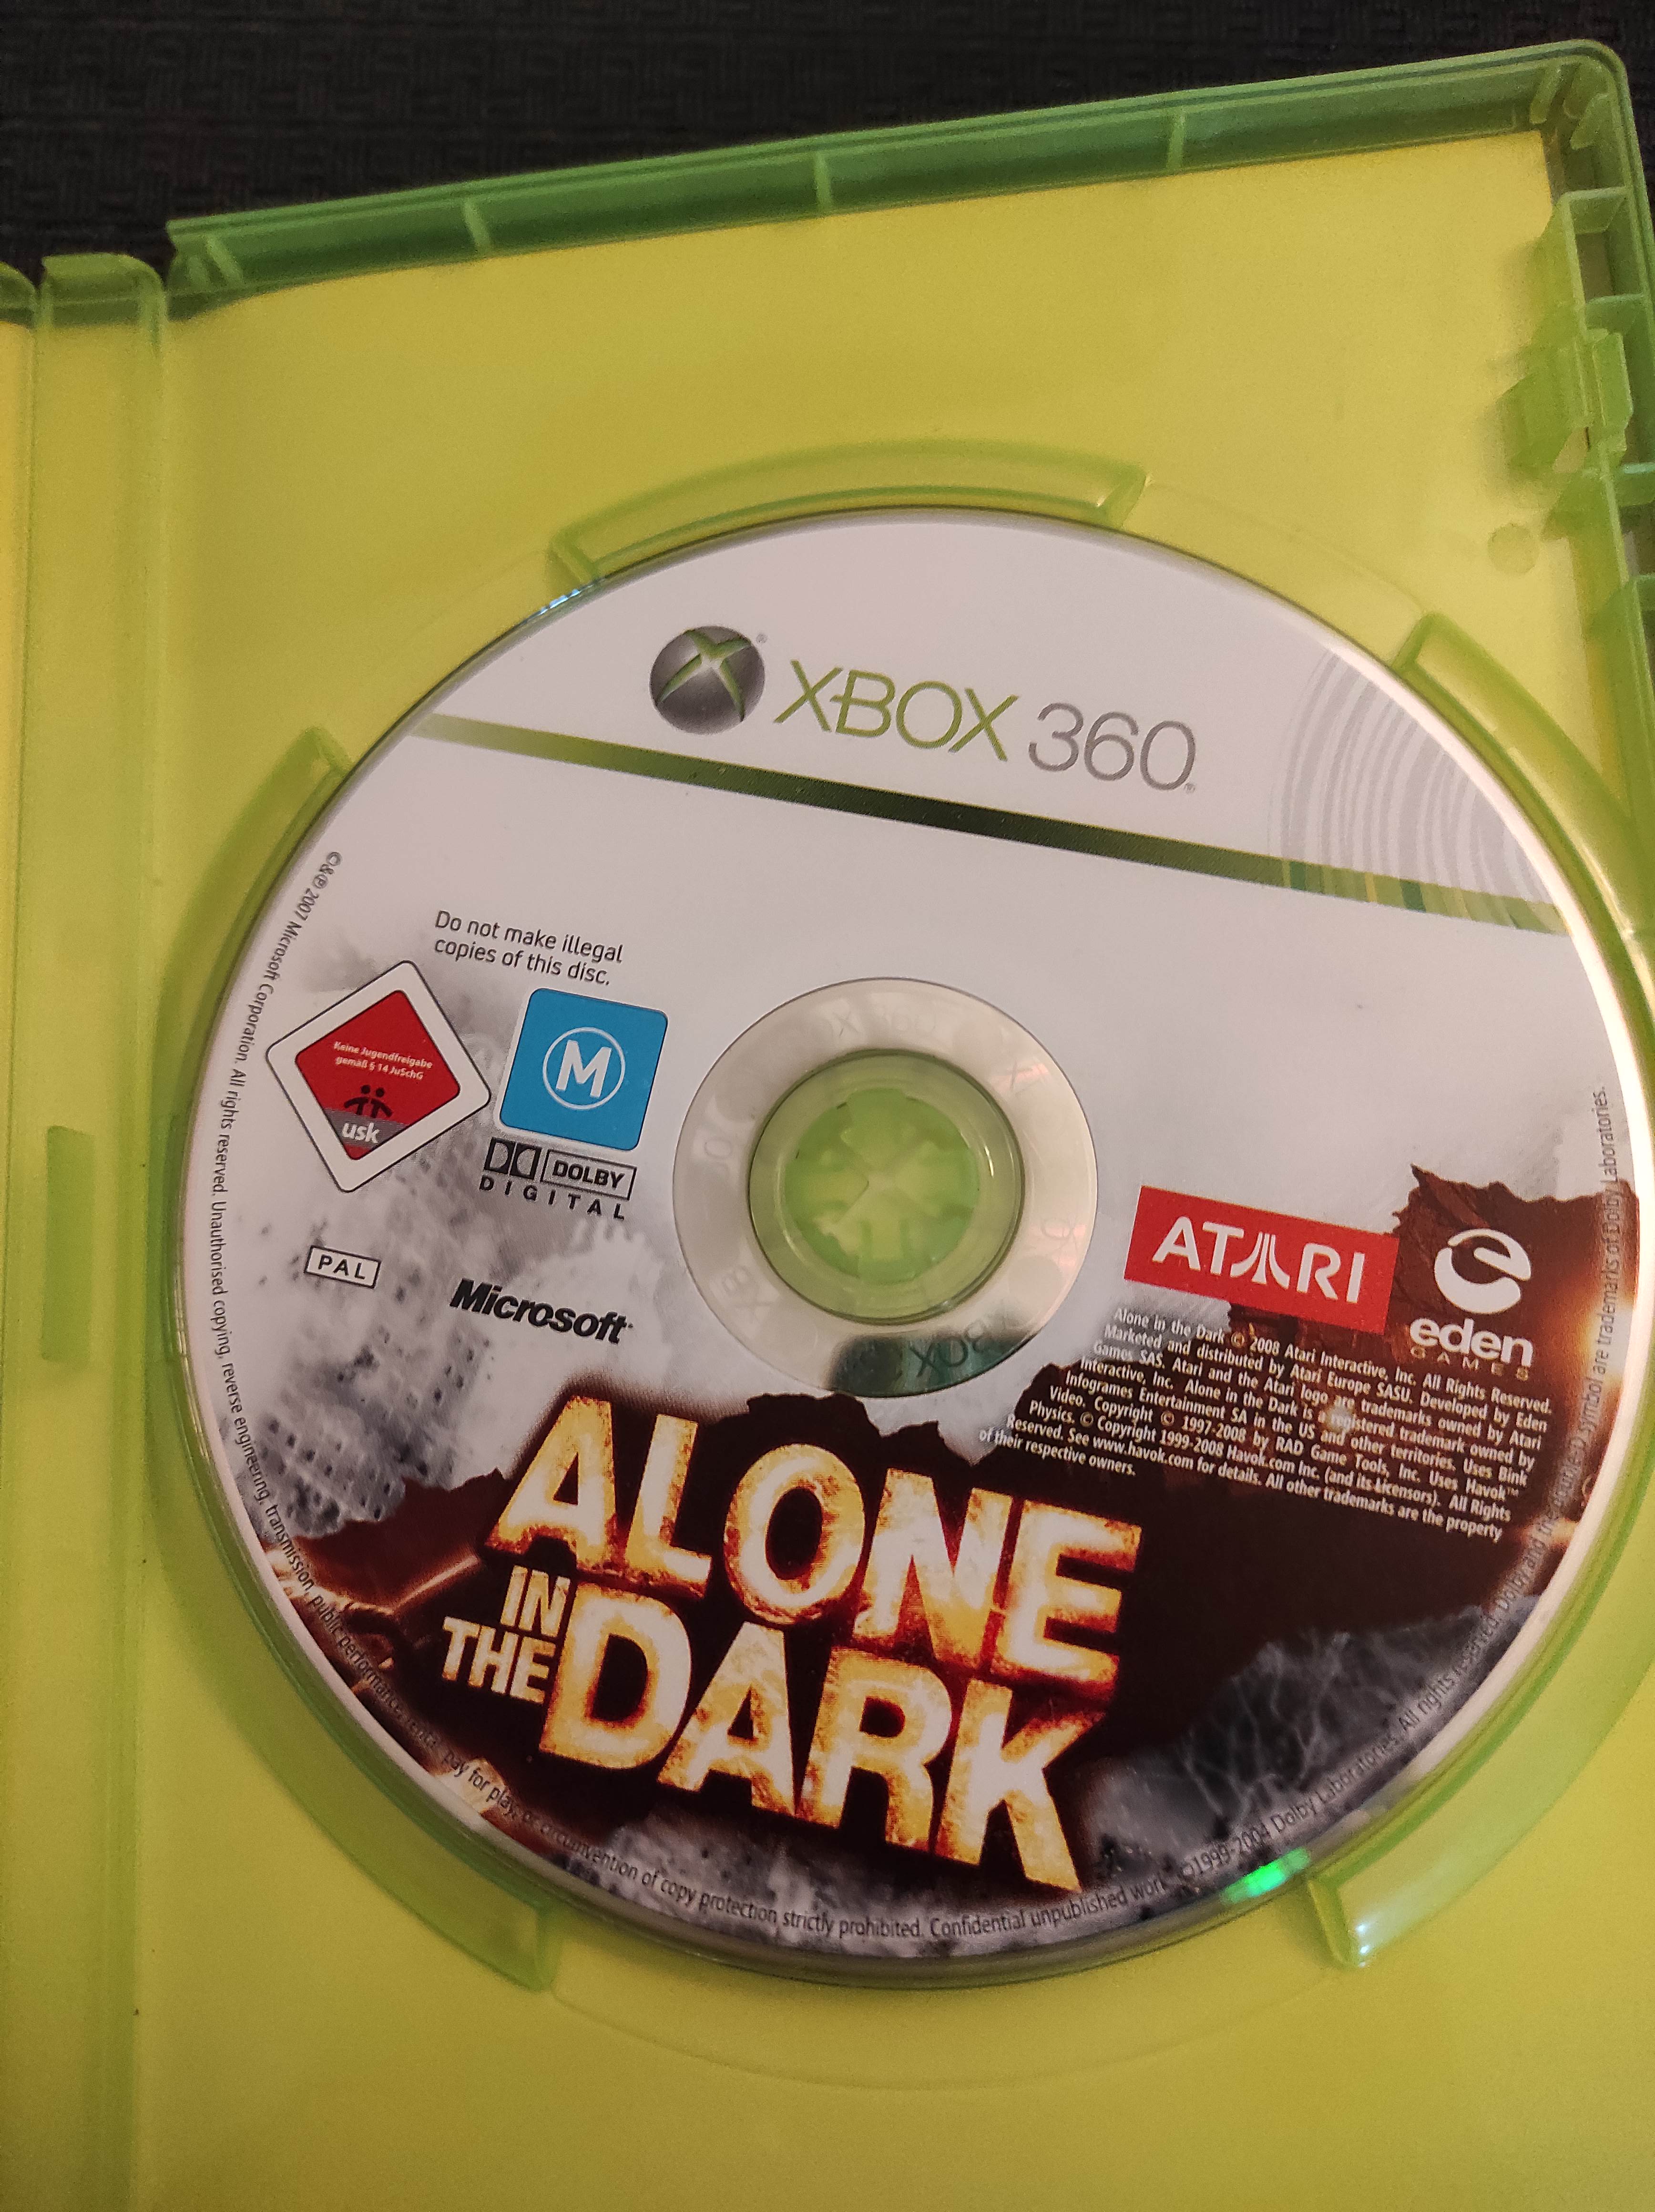 XBOX 360 Alone in the dark